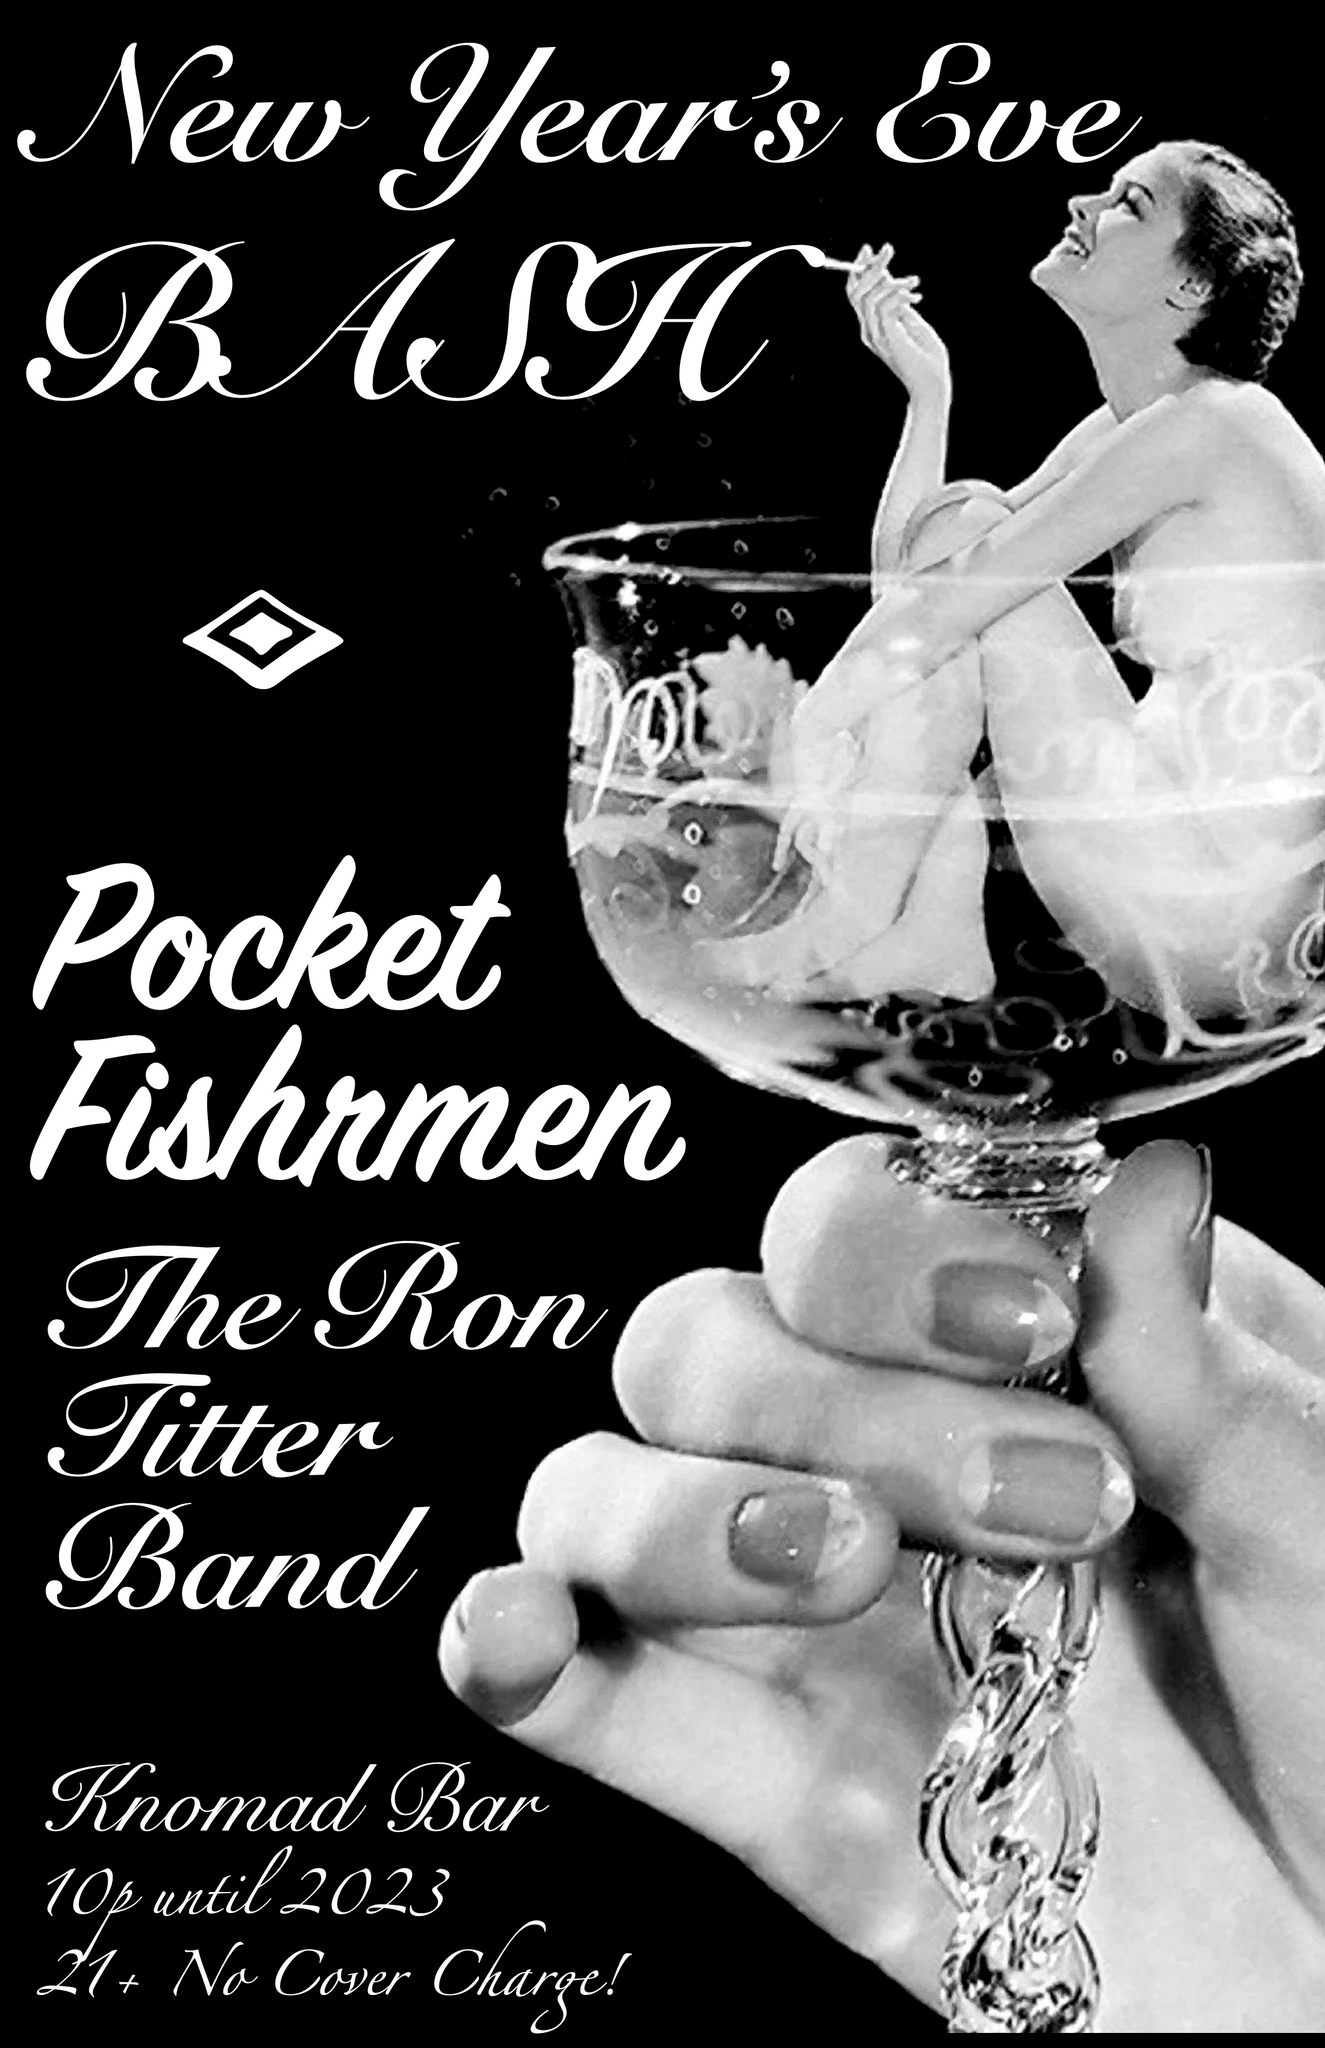 NYE BASH: Pocket Fishrmen & The Ron Titter Band